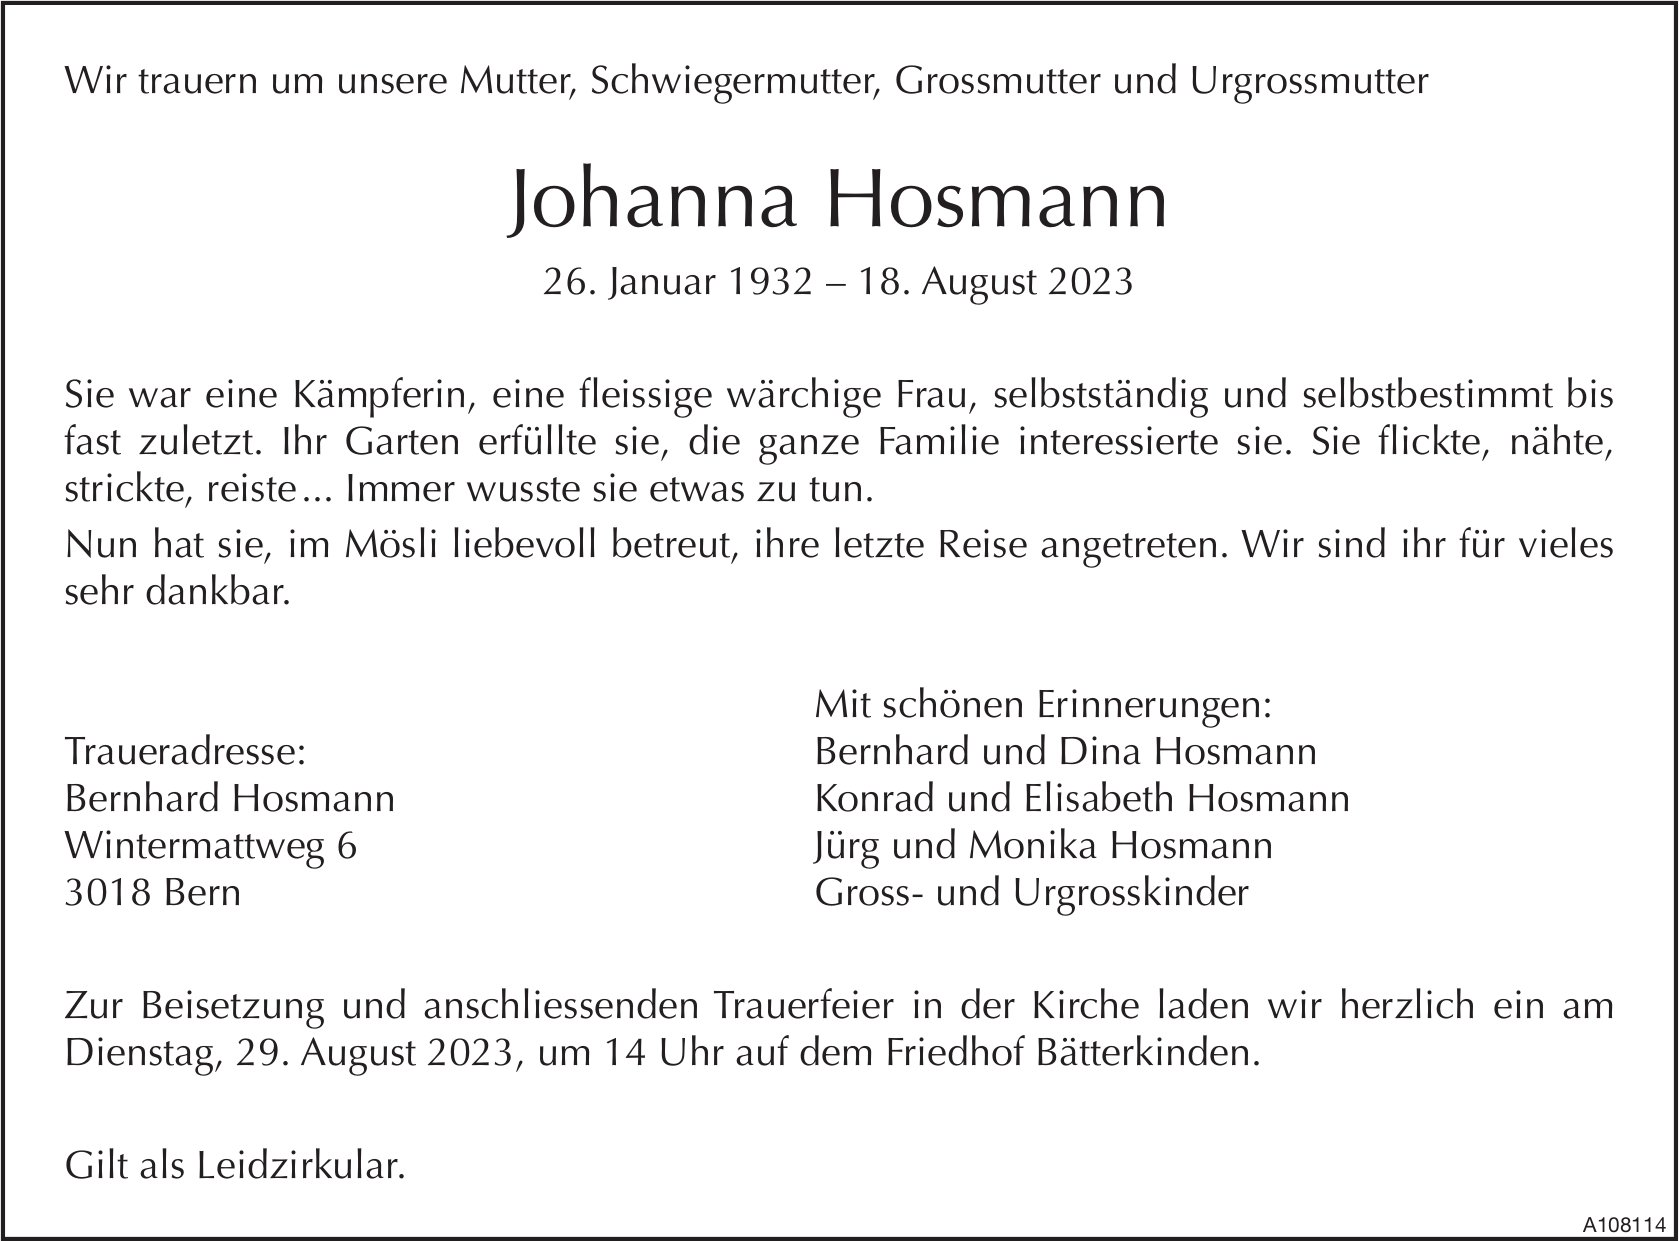 Johanna Hosmann, August 2023 / TA